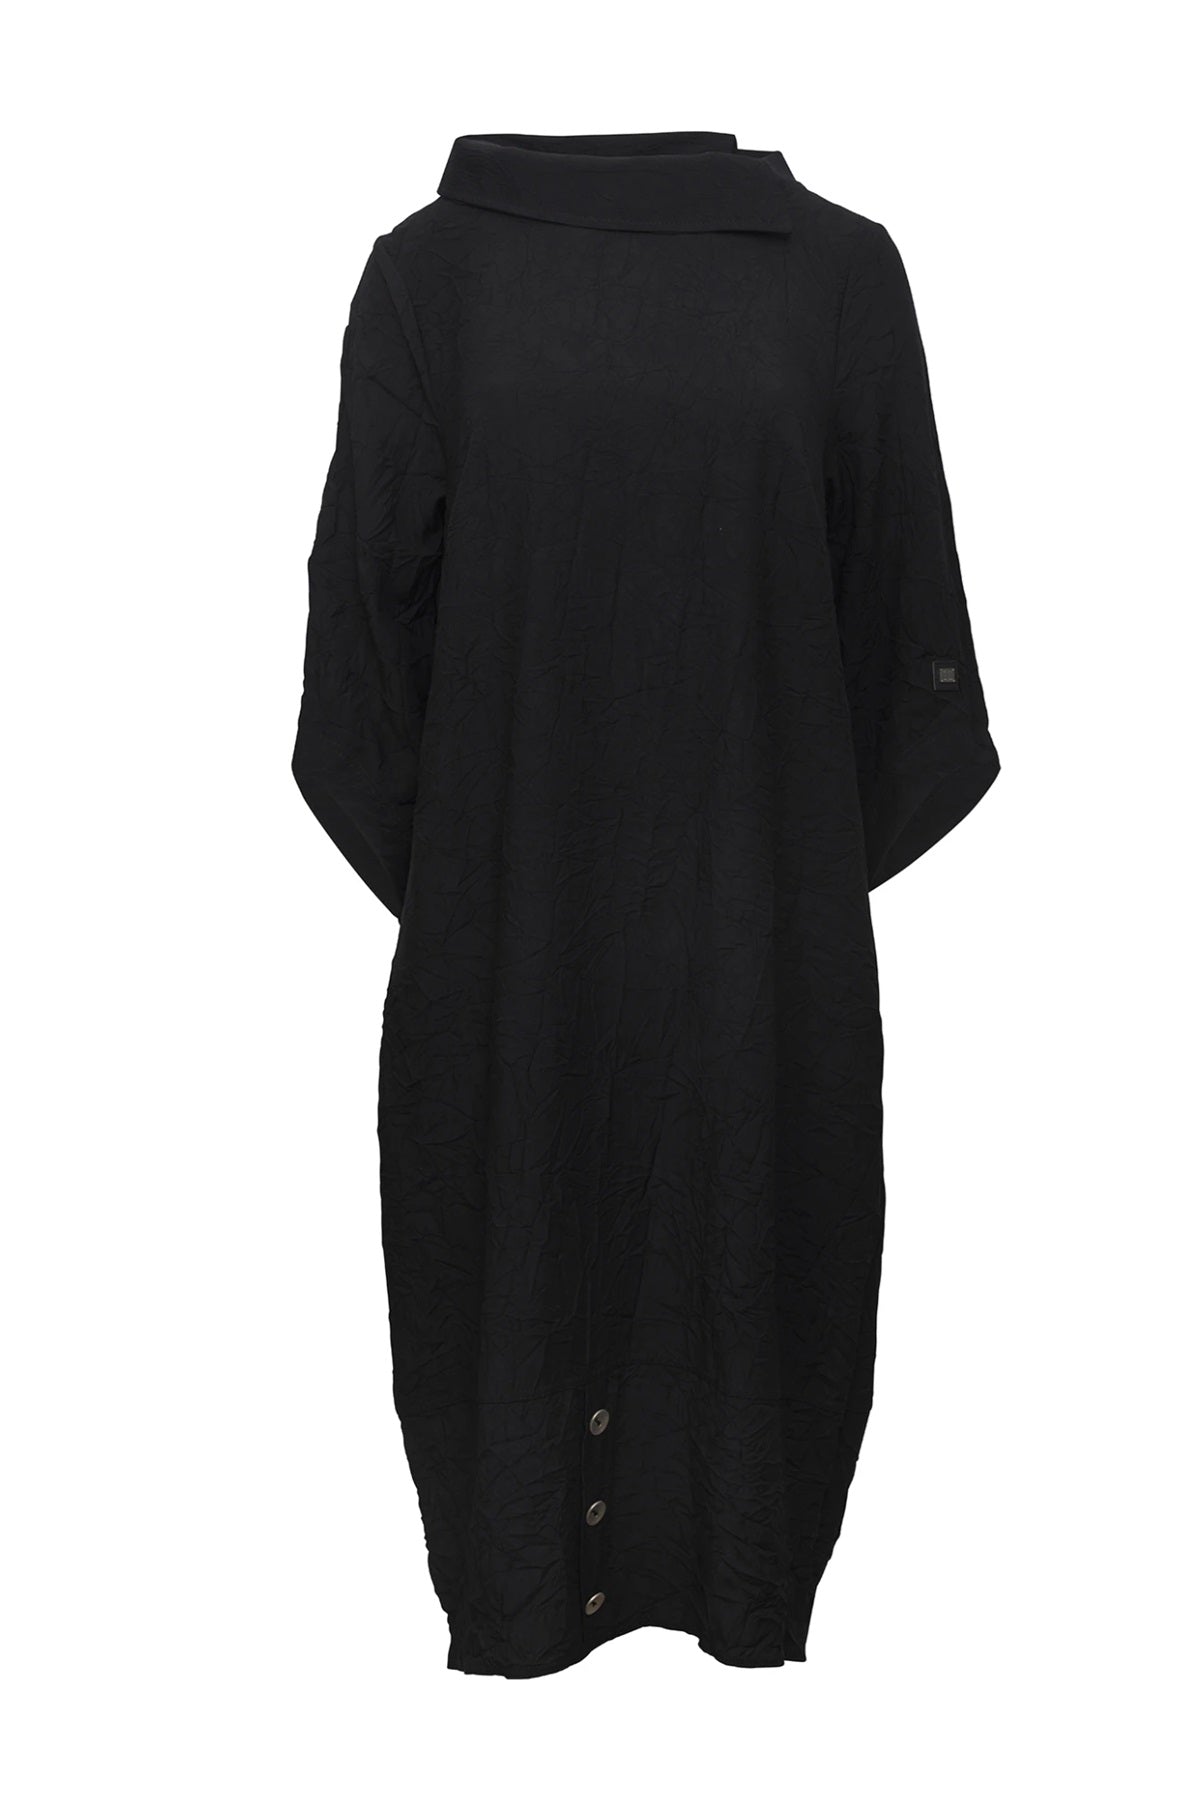 E Avantgarde kjole 14044, Black